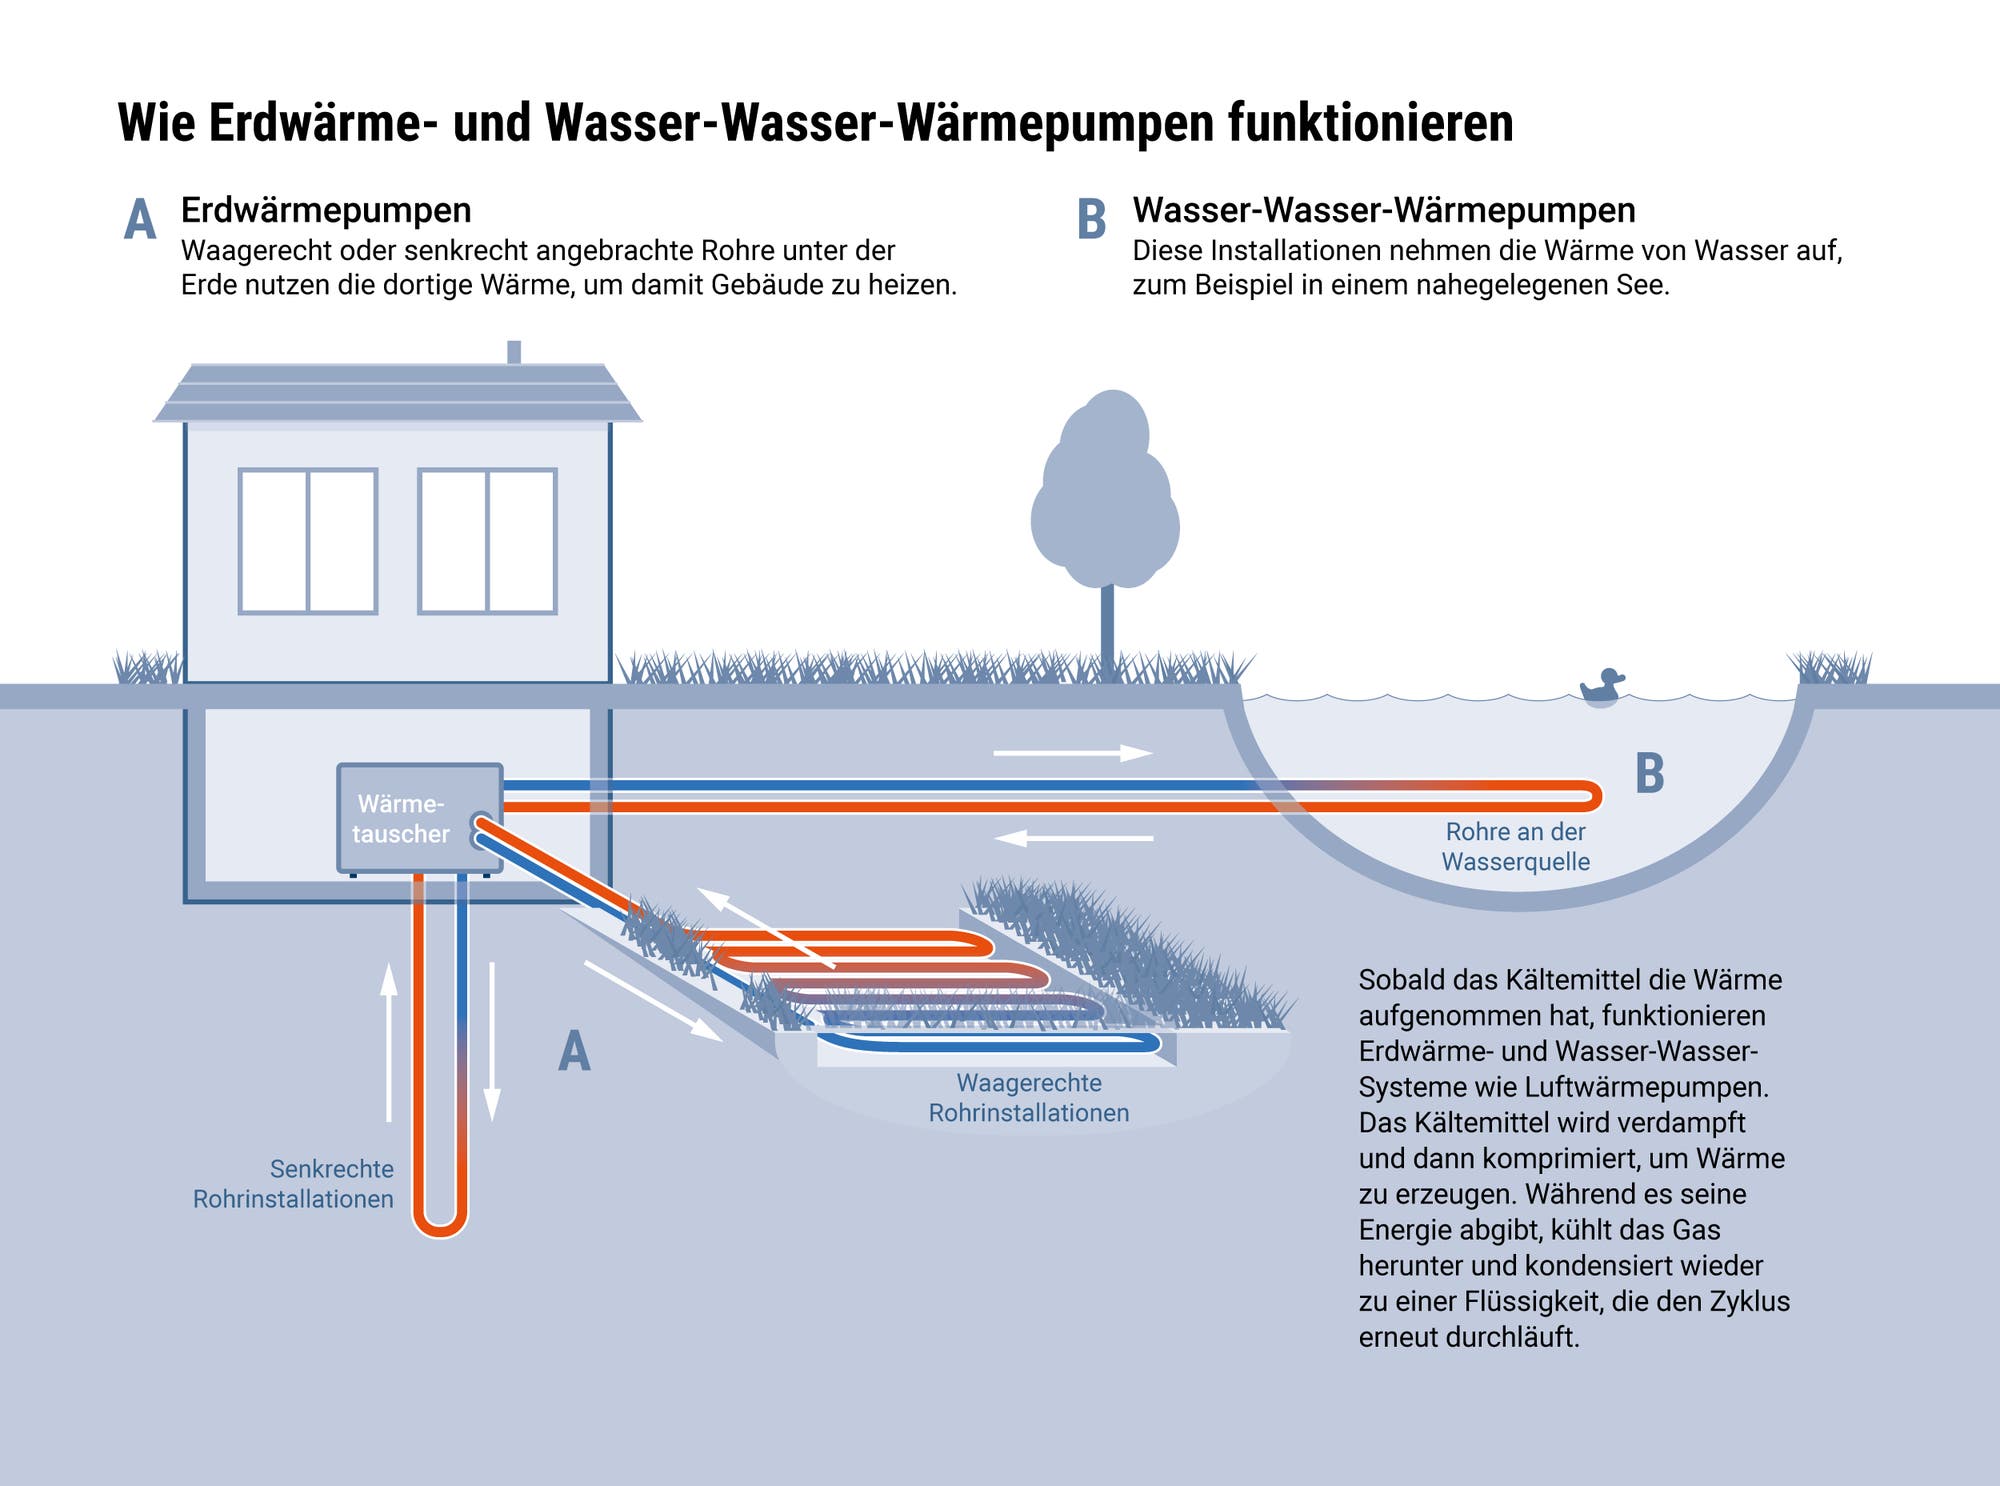 Infografik mit der schematischen Funktionsweise von Erdwärme- und Wasser-Wasser-Wärmepumpen